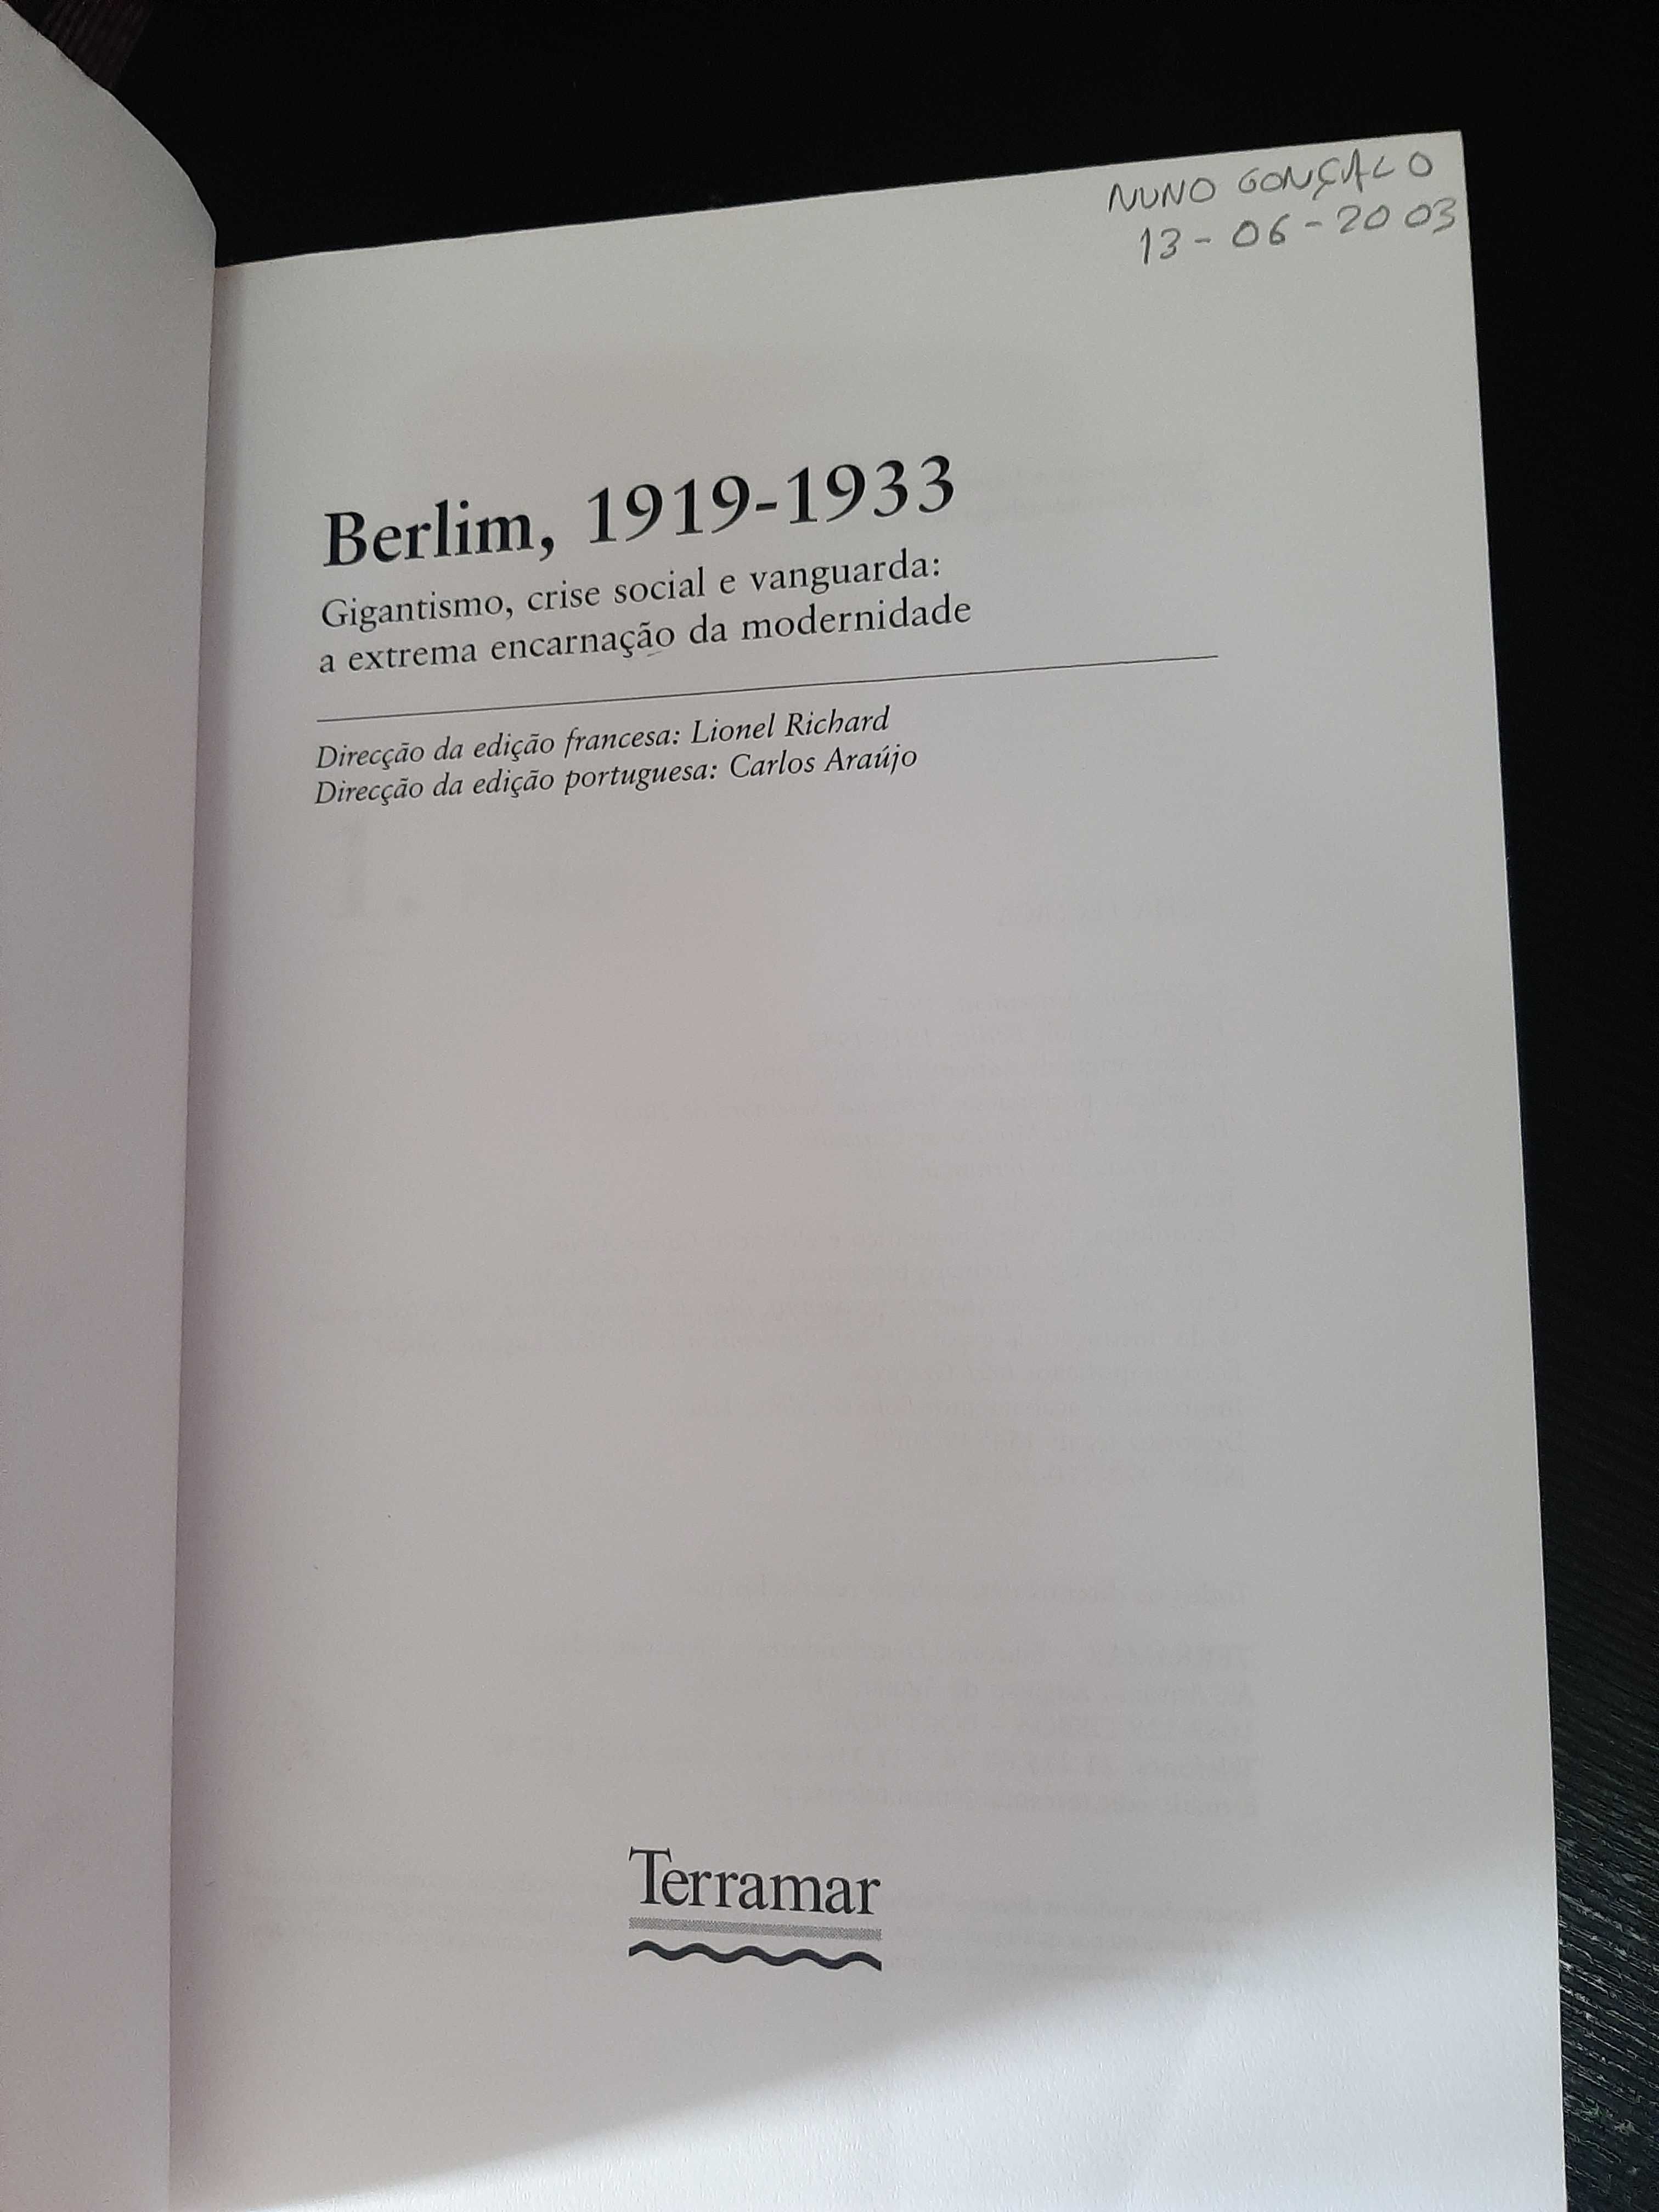 Lionel Richard – Berlim 1919-33: Gigantismo, Crise Social e Vanguarda